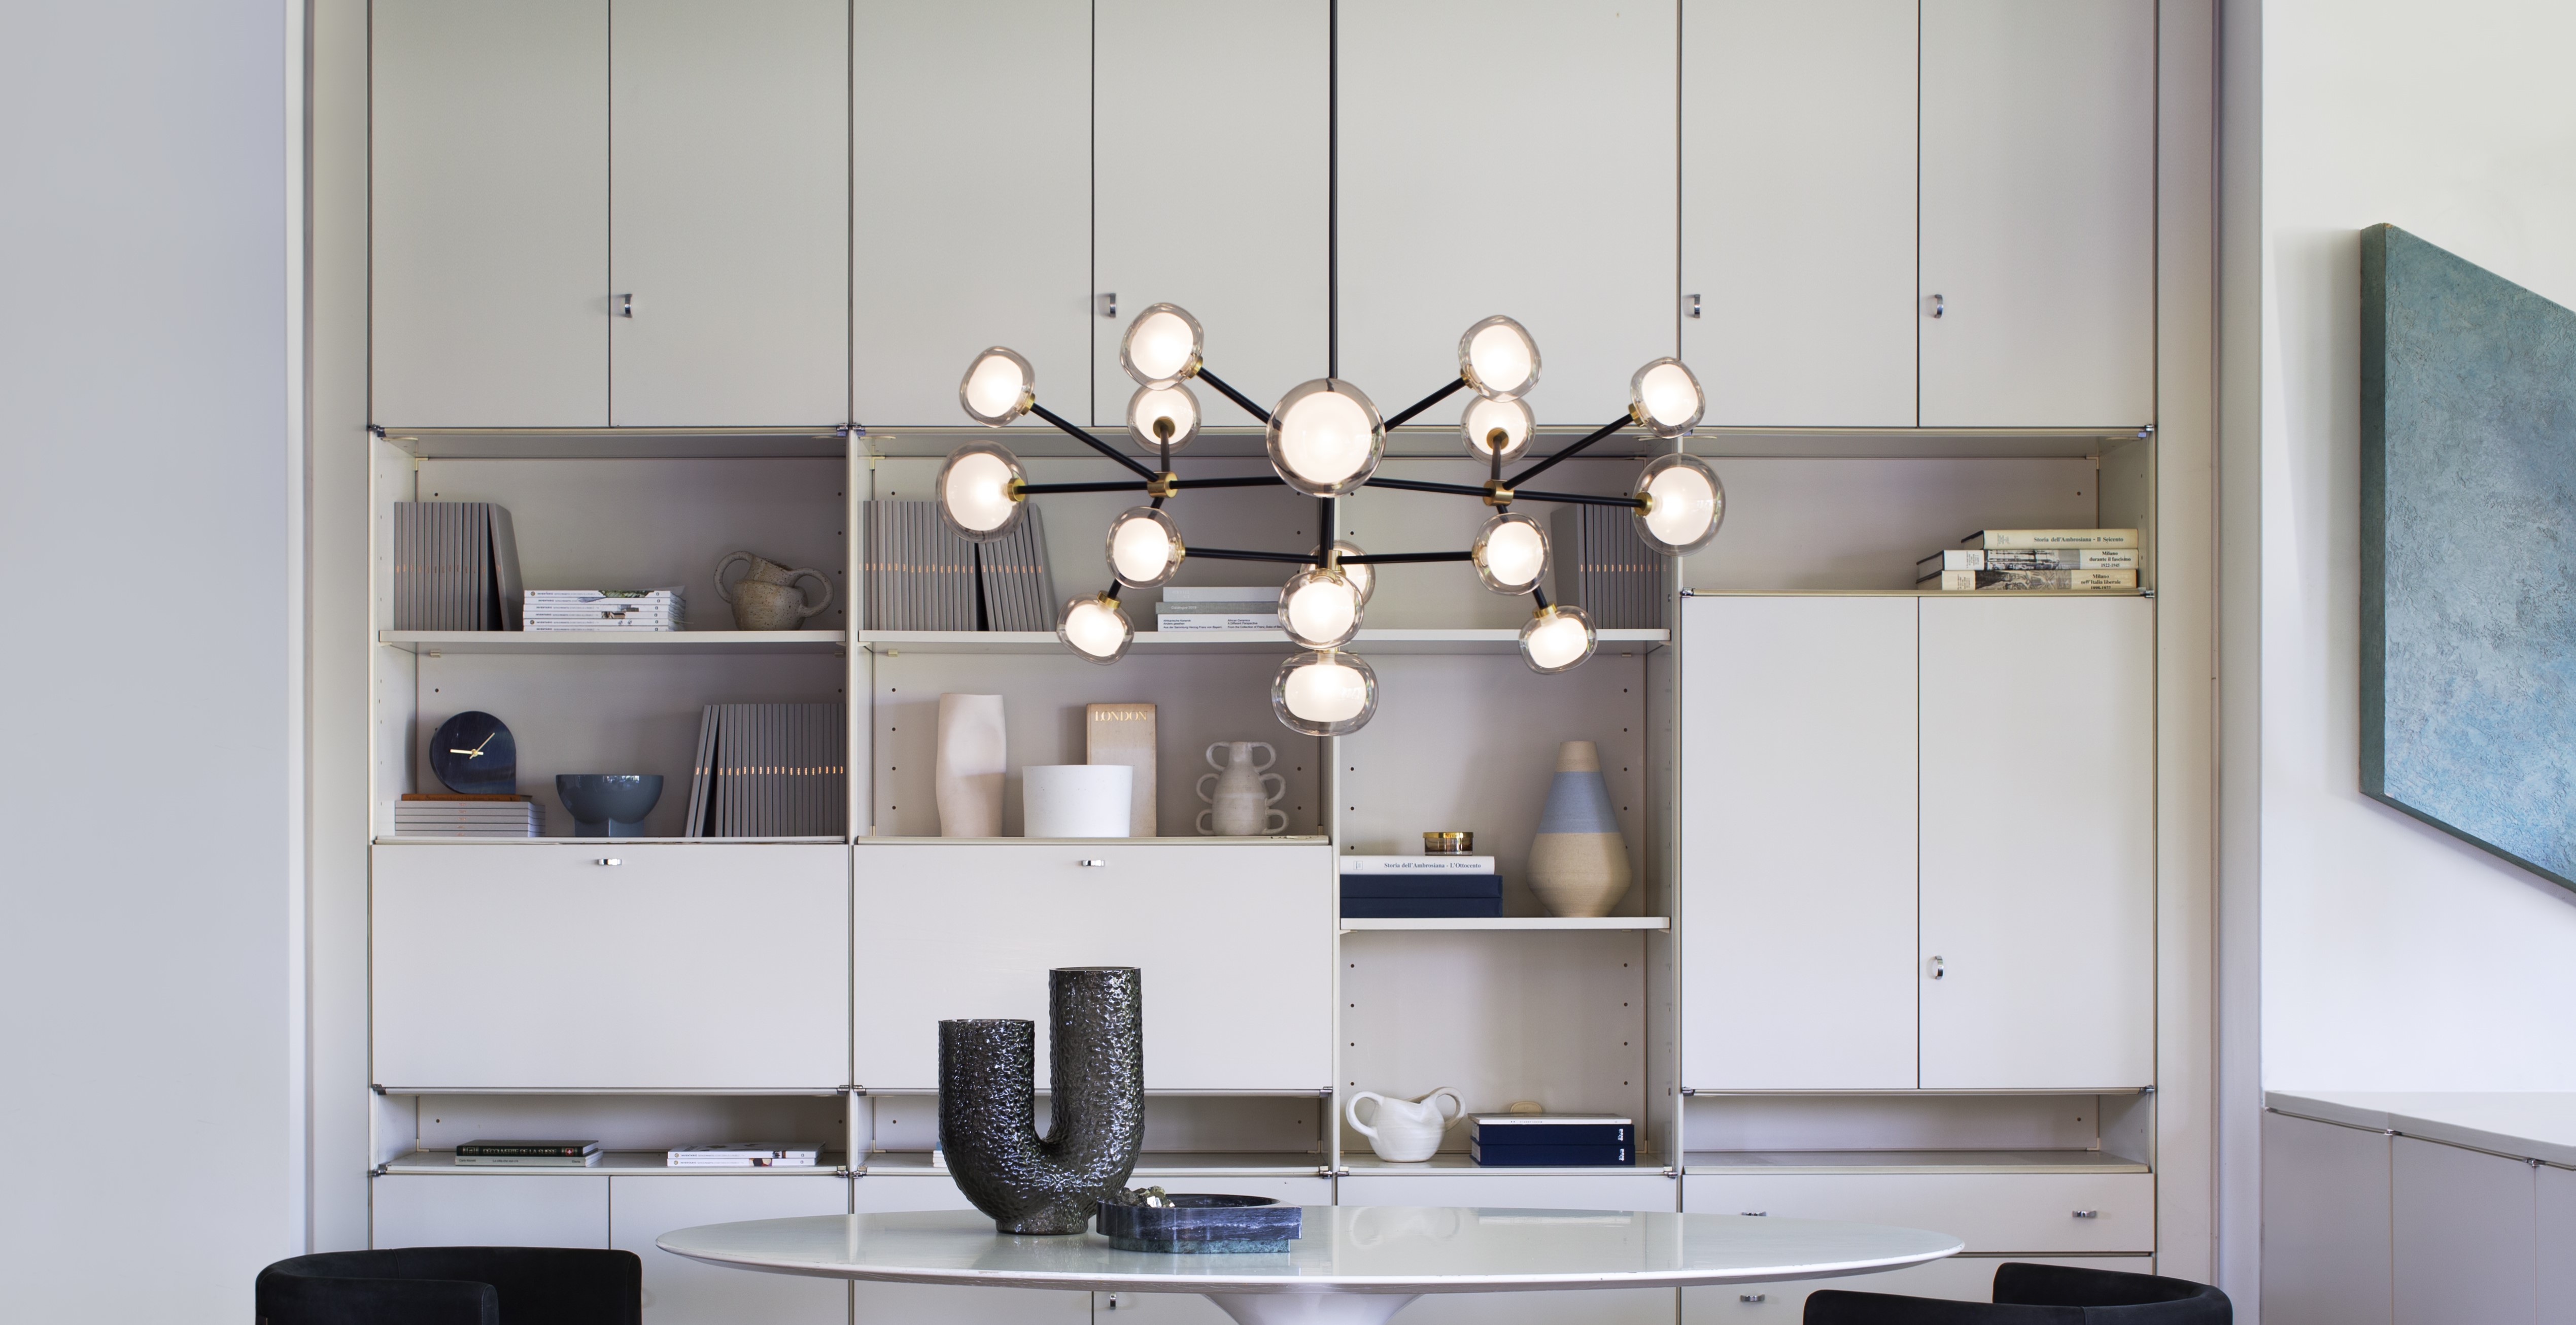 TOOY-Lampen in hoher Qualität und schönem Design – Bestellen Sie Ihre neue Designerlampe bei Andlight!